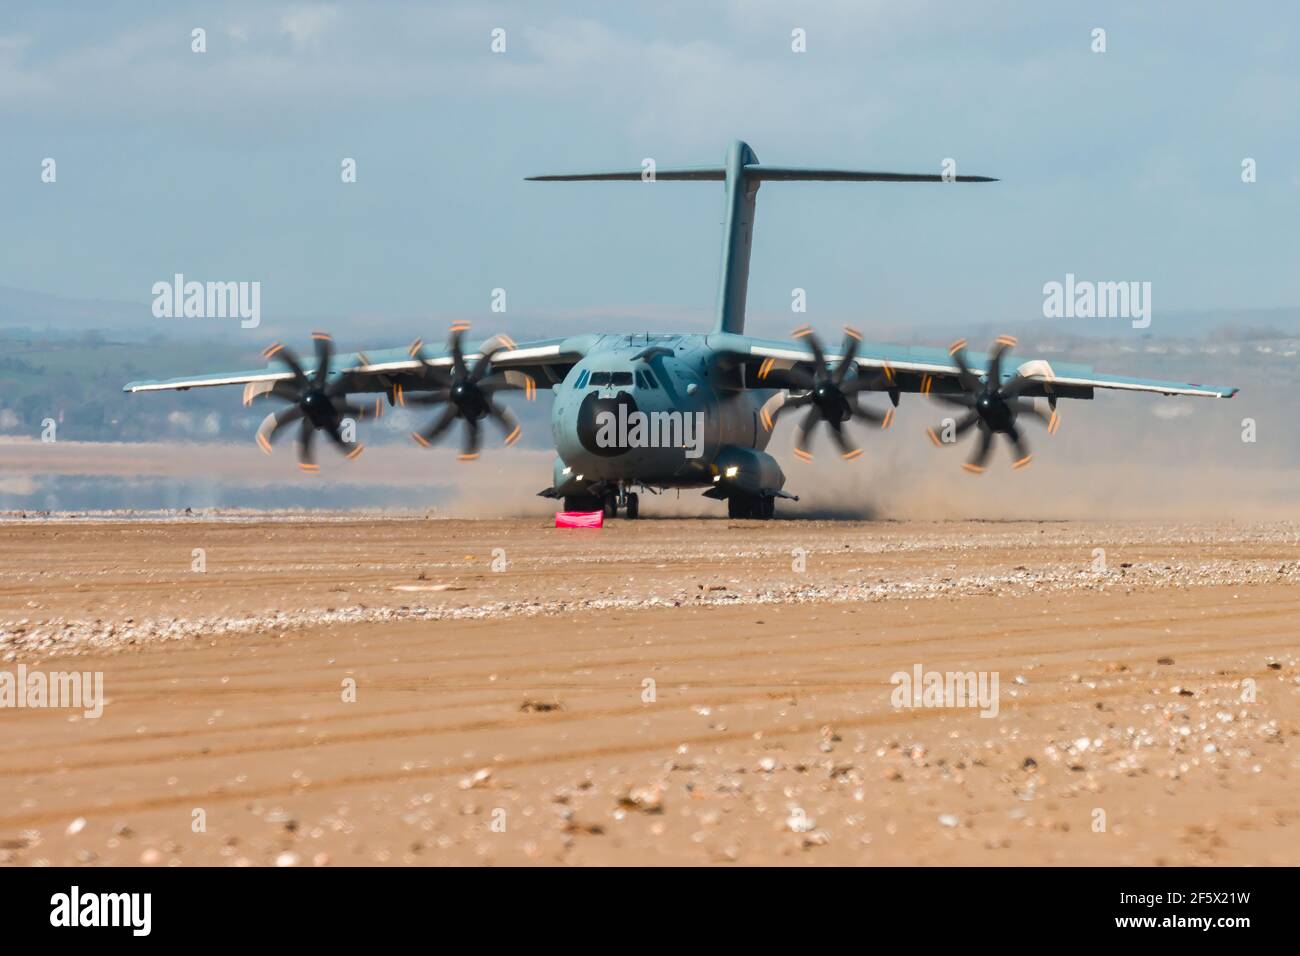 CEFN SIDAN, PAYS DE GALLES - MARS 25 2021: Un avion de transport militaire de la Royal Air Force Airbus A400M 'Atlas' pratiquant des atterrissages tactiques sur une plage Banque D'Images